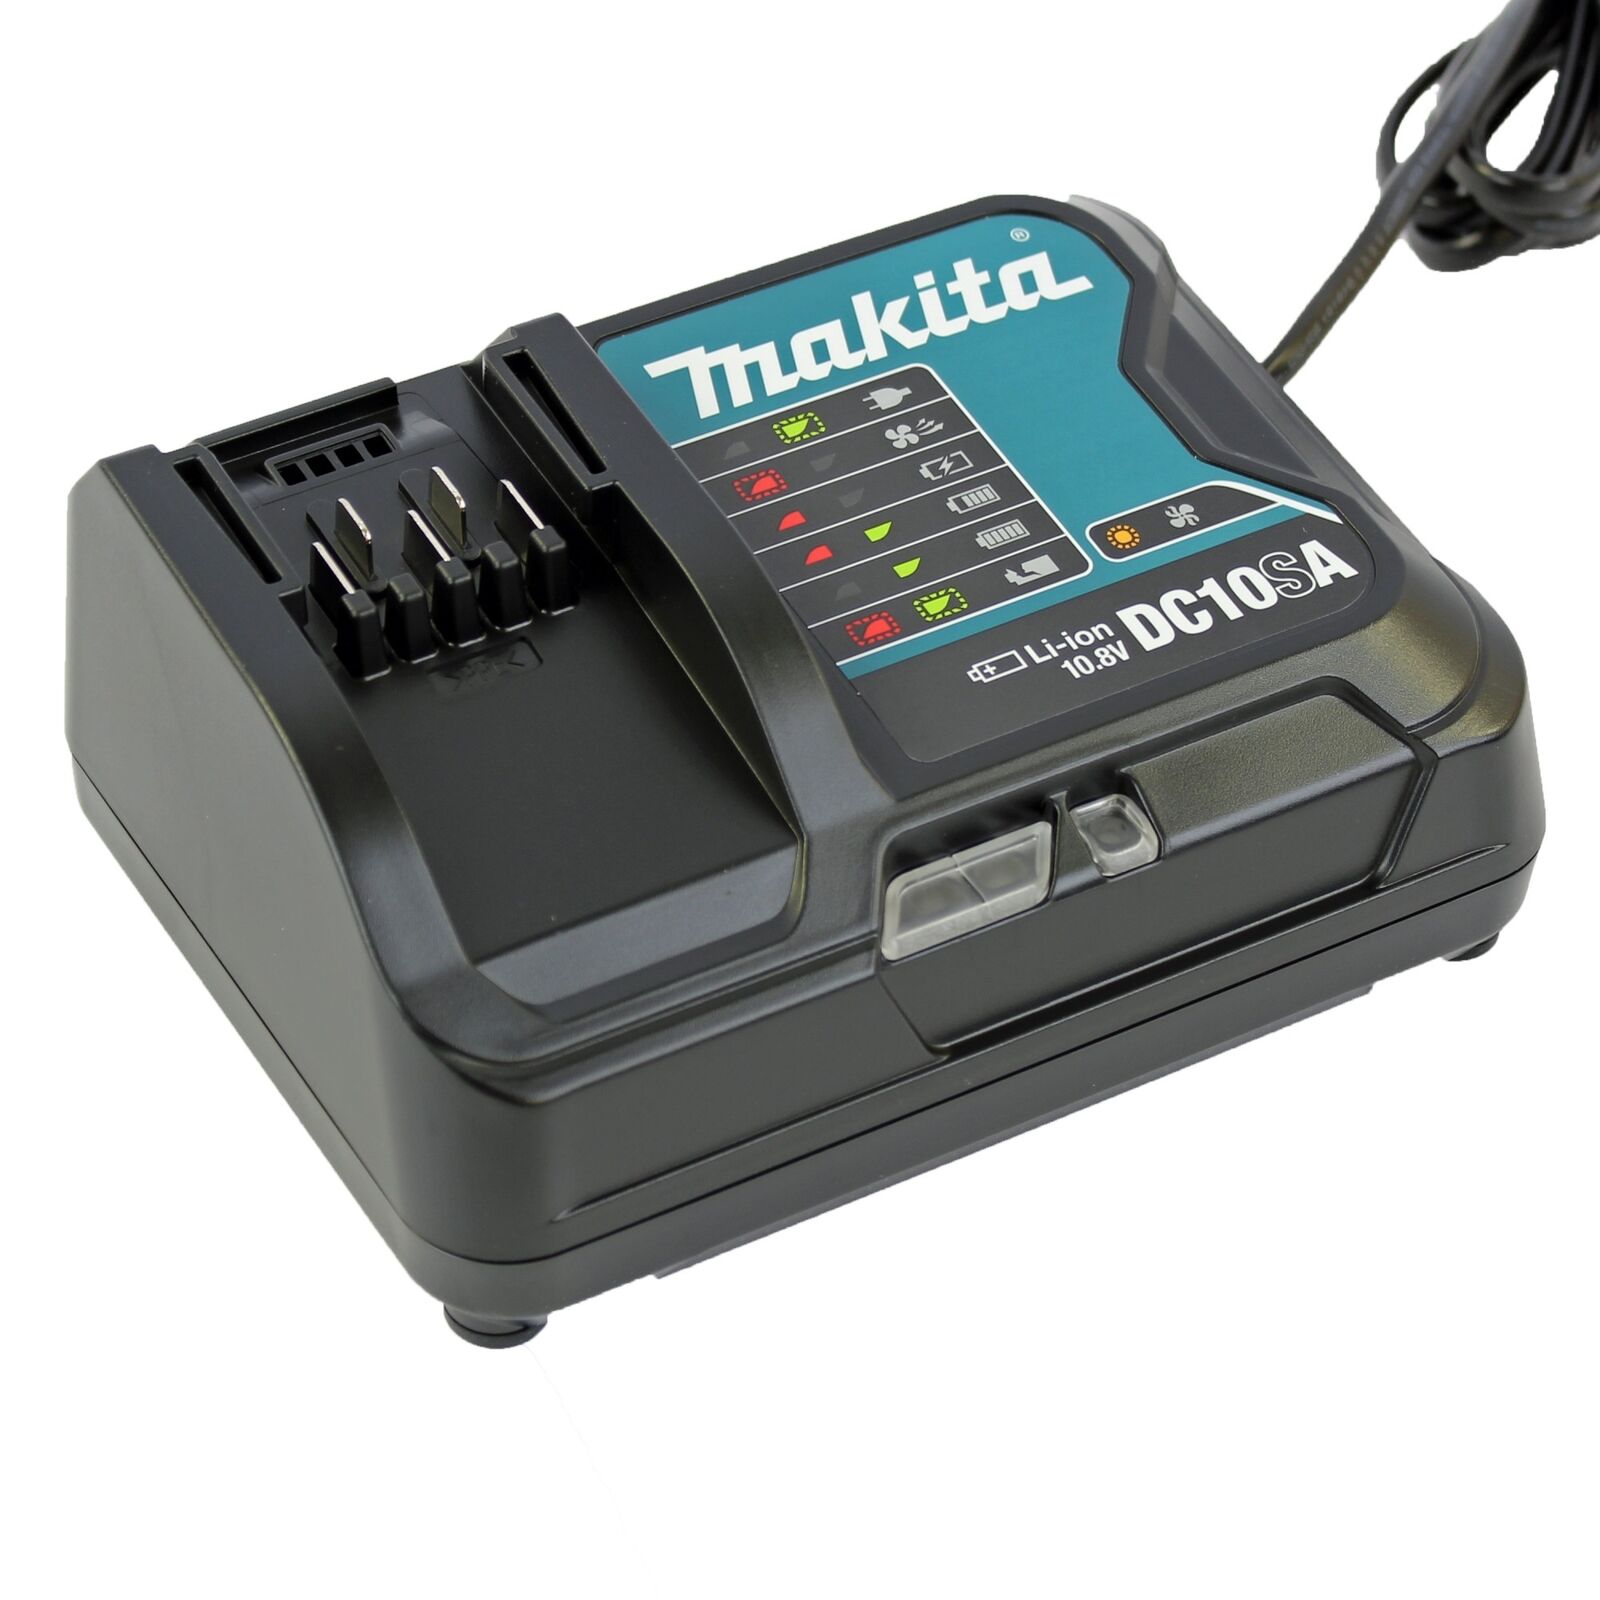 Зарядное устройство Makita dc1804t. Зарядное Makita dc10. Зарядное устройство Макита dc18wa. Зарядка Макита 18 вольт. Купить зарядку макита